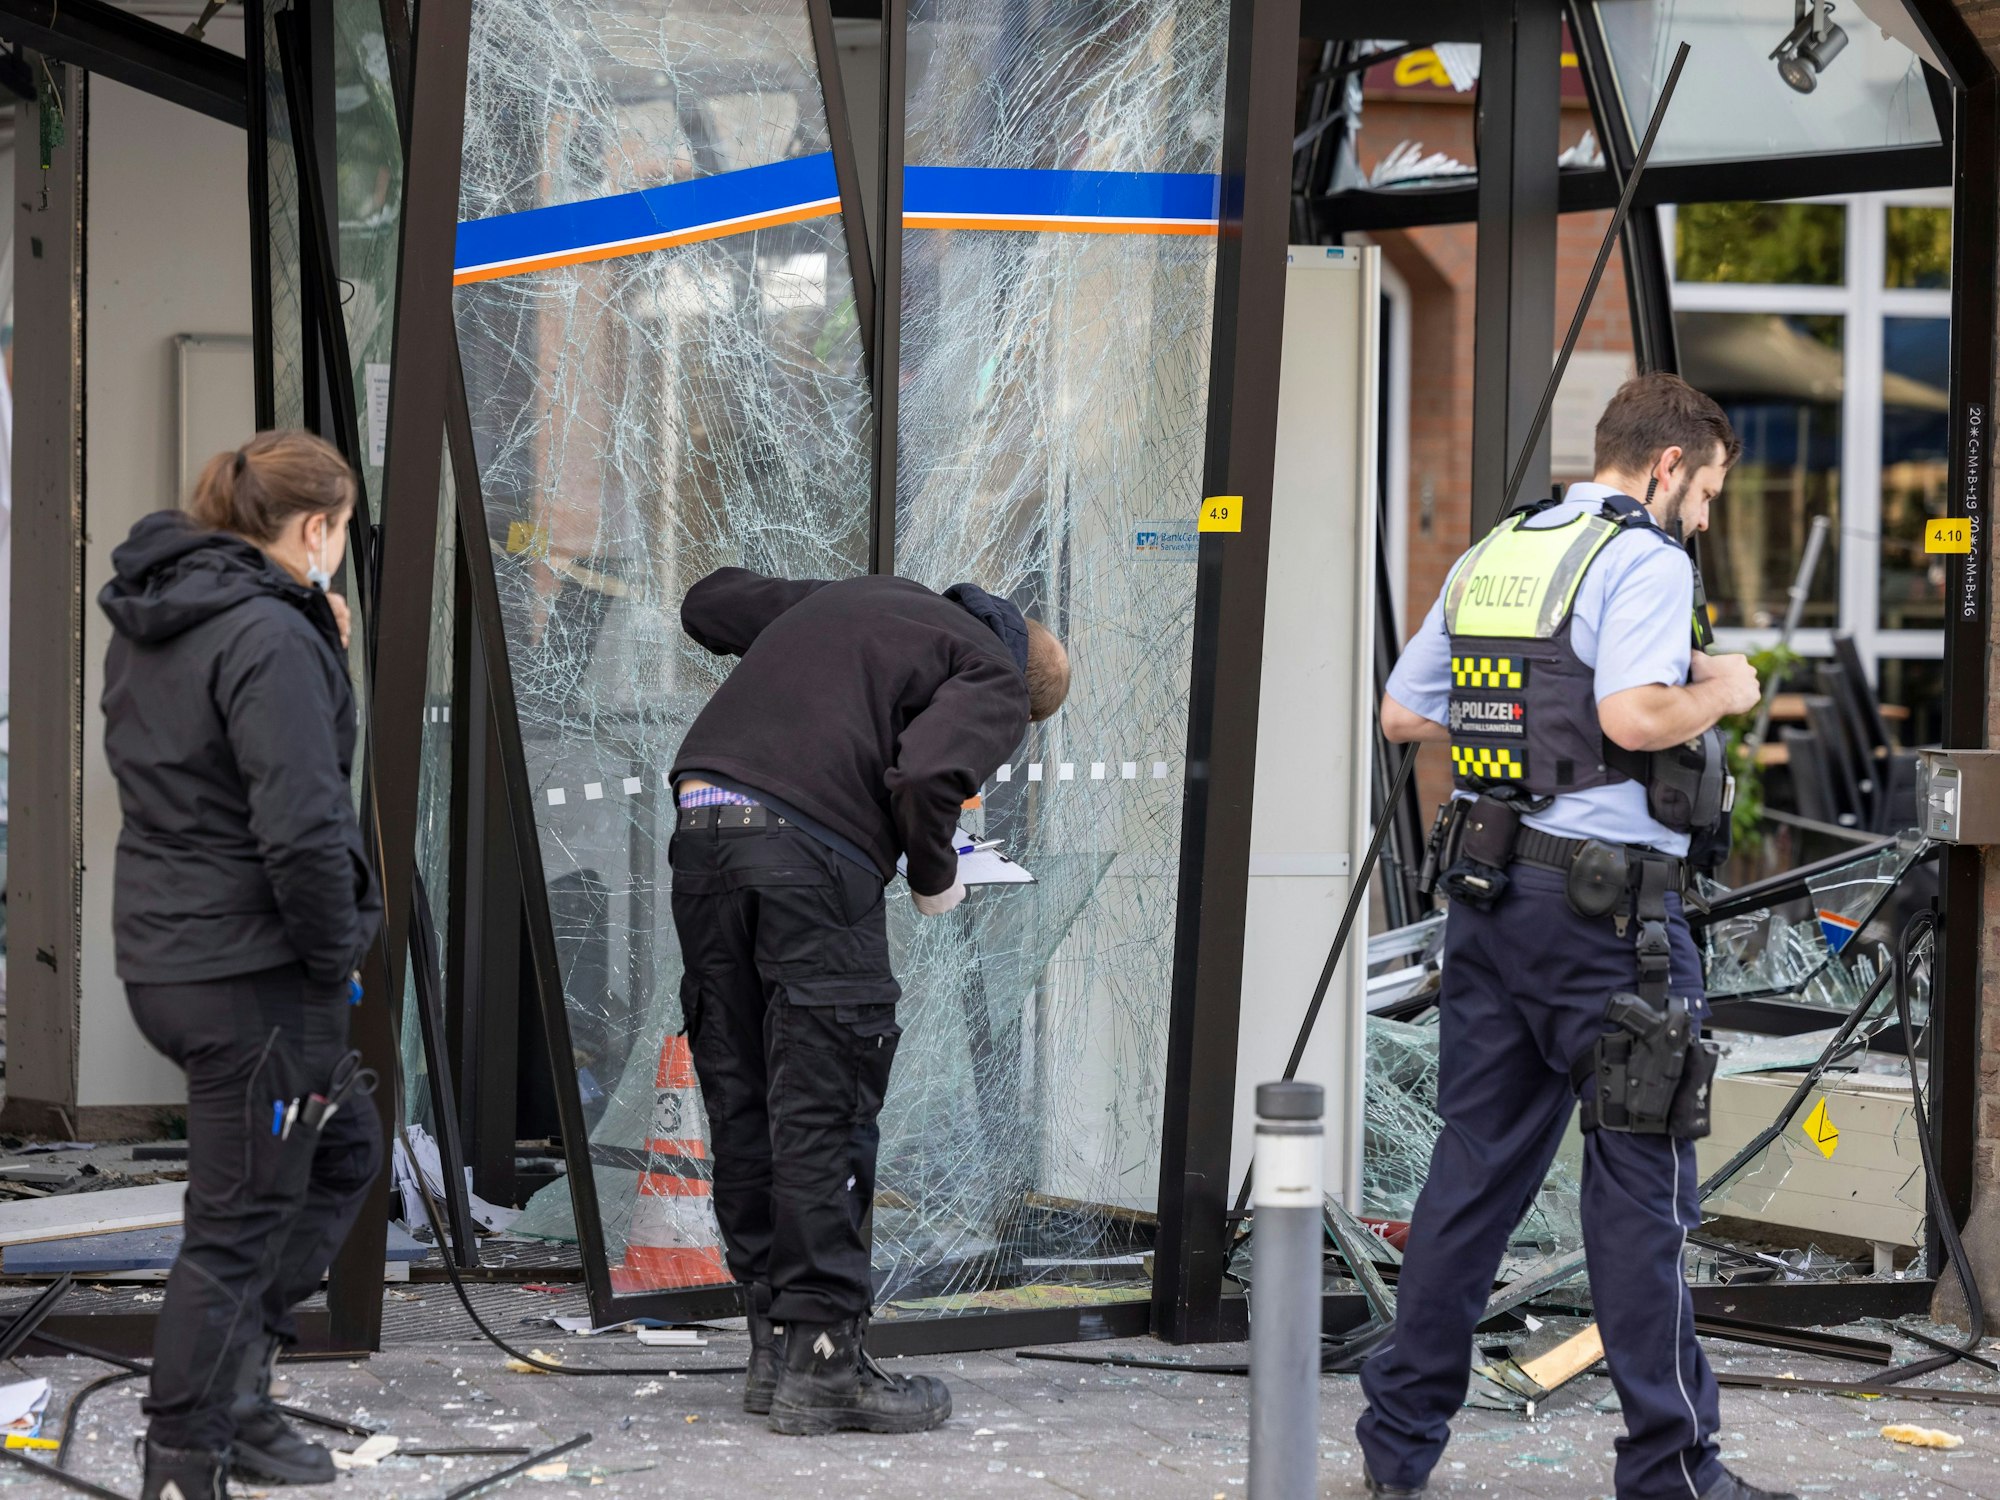 Drei Einsatzkräfte stehen vor der beschädigten Glasfassade der Bankfiliale, ein Beamter untersucht die geborstene Eingangstür.